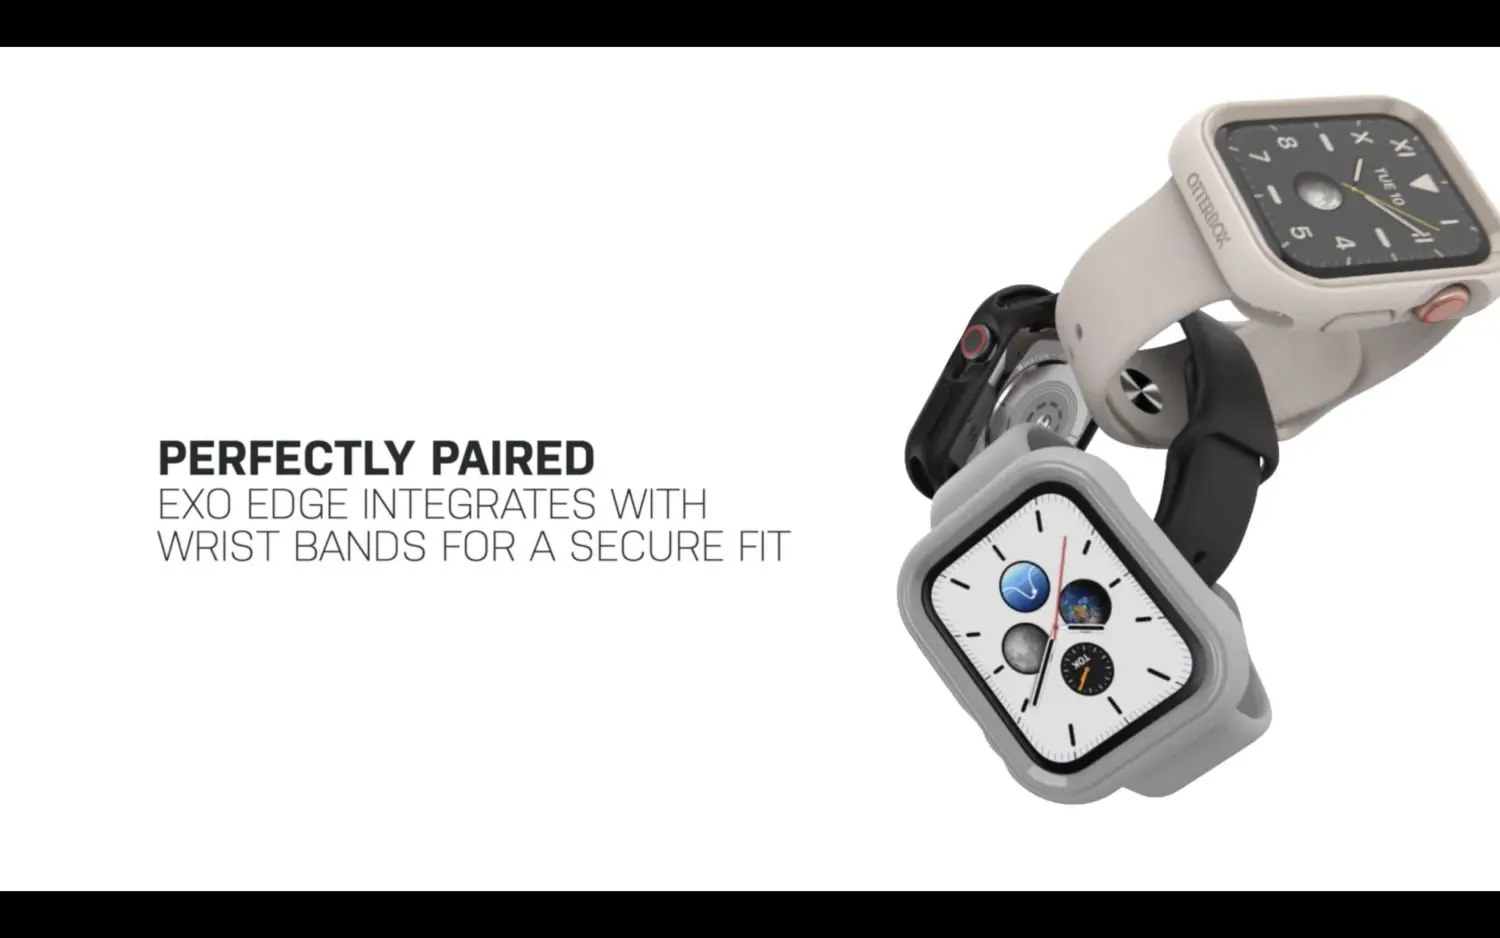 เคส OtterBox รุ่น Exo Edge - Apple Watch Series 6/SE/5/4 (44mm) - ดำ